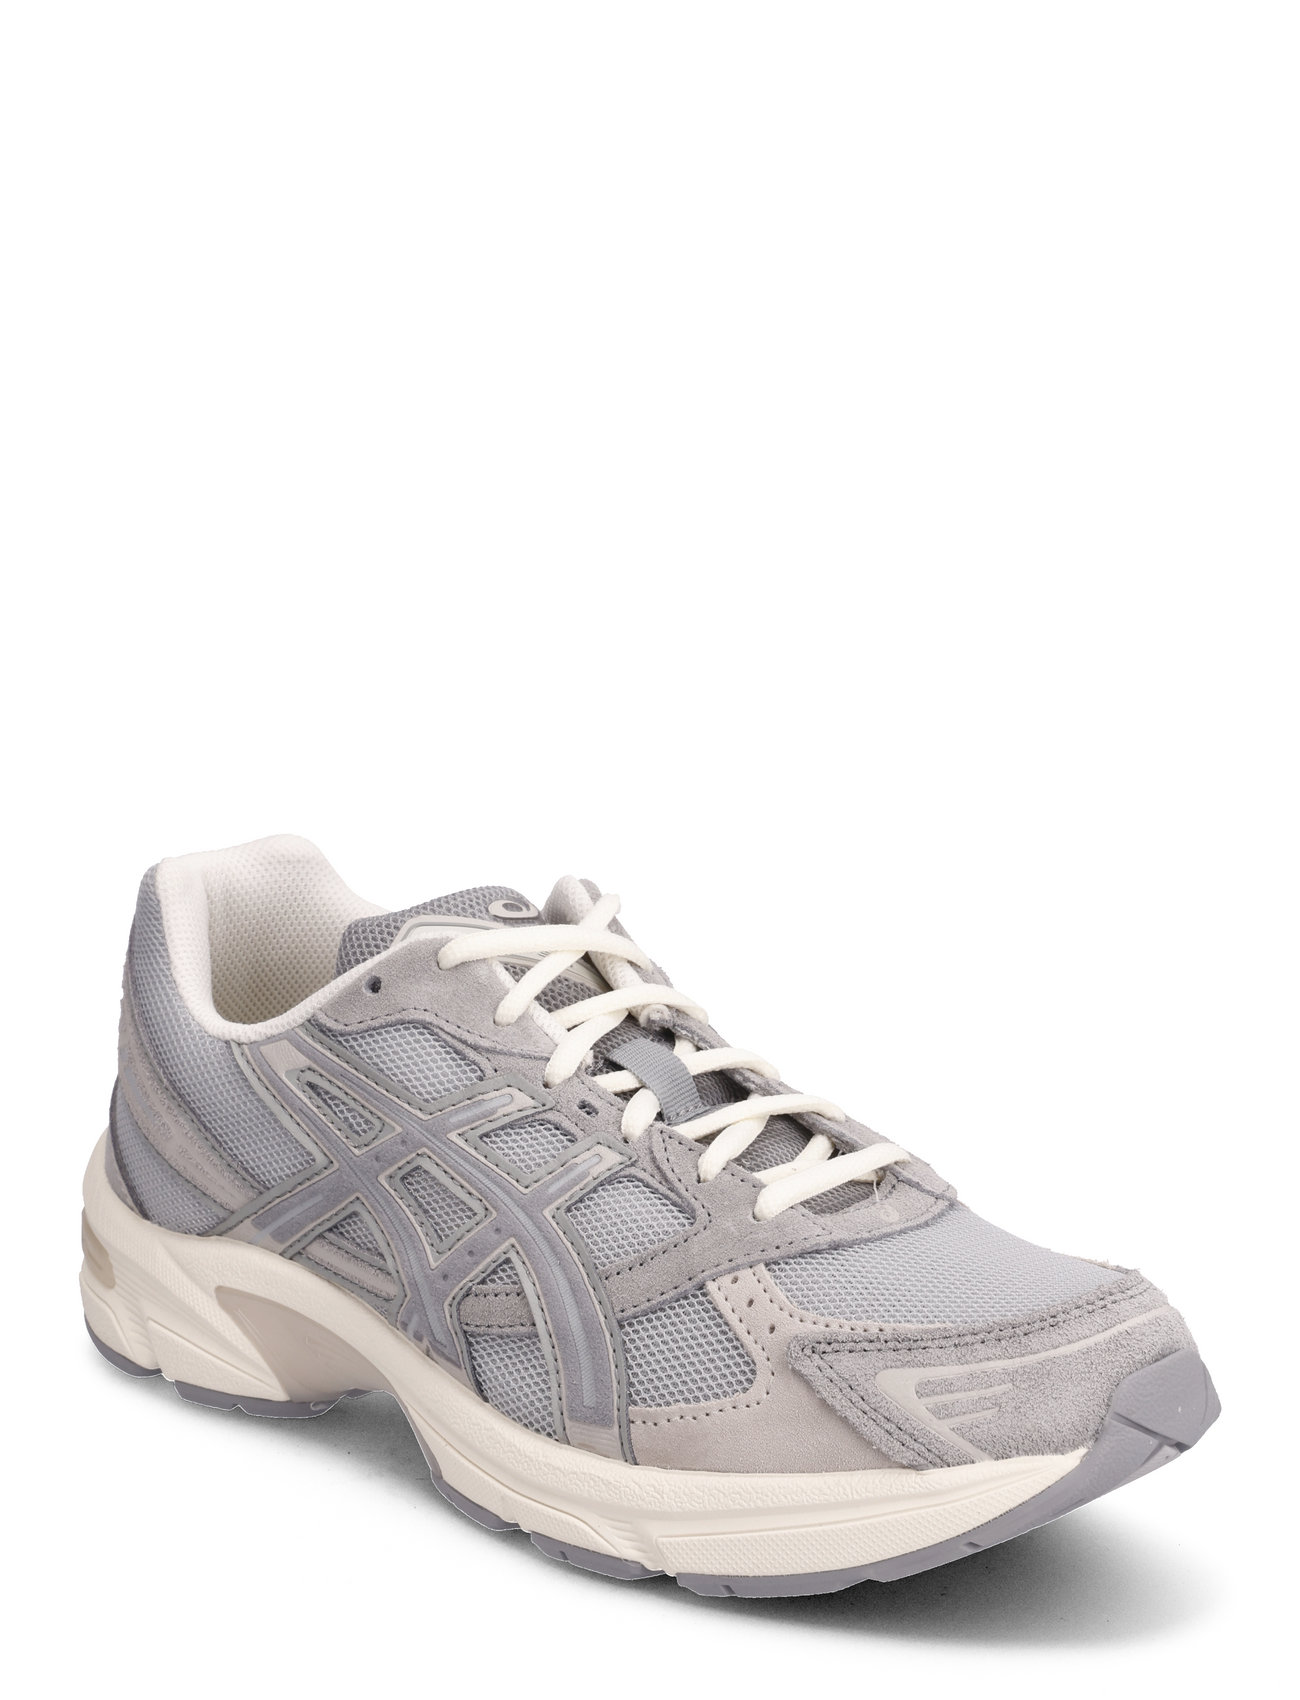 Asics "Gel-1130 Sport Sneakers Low-top Grey Asics"